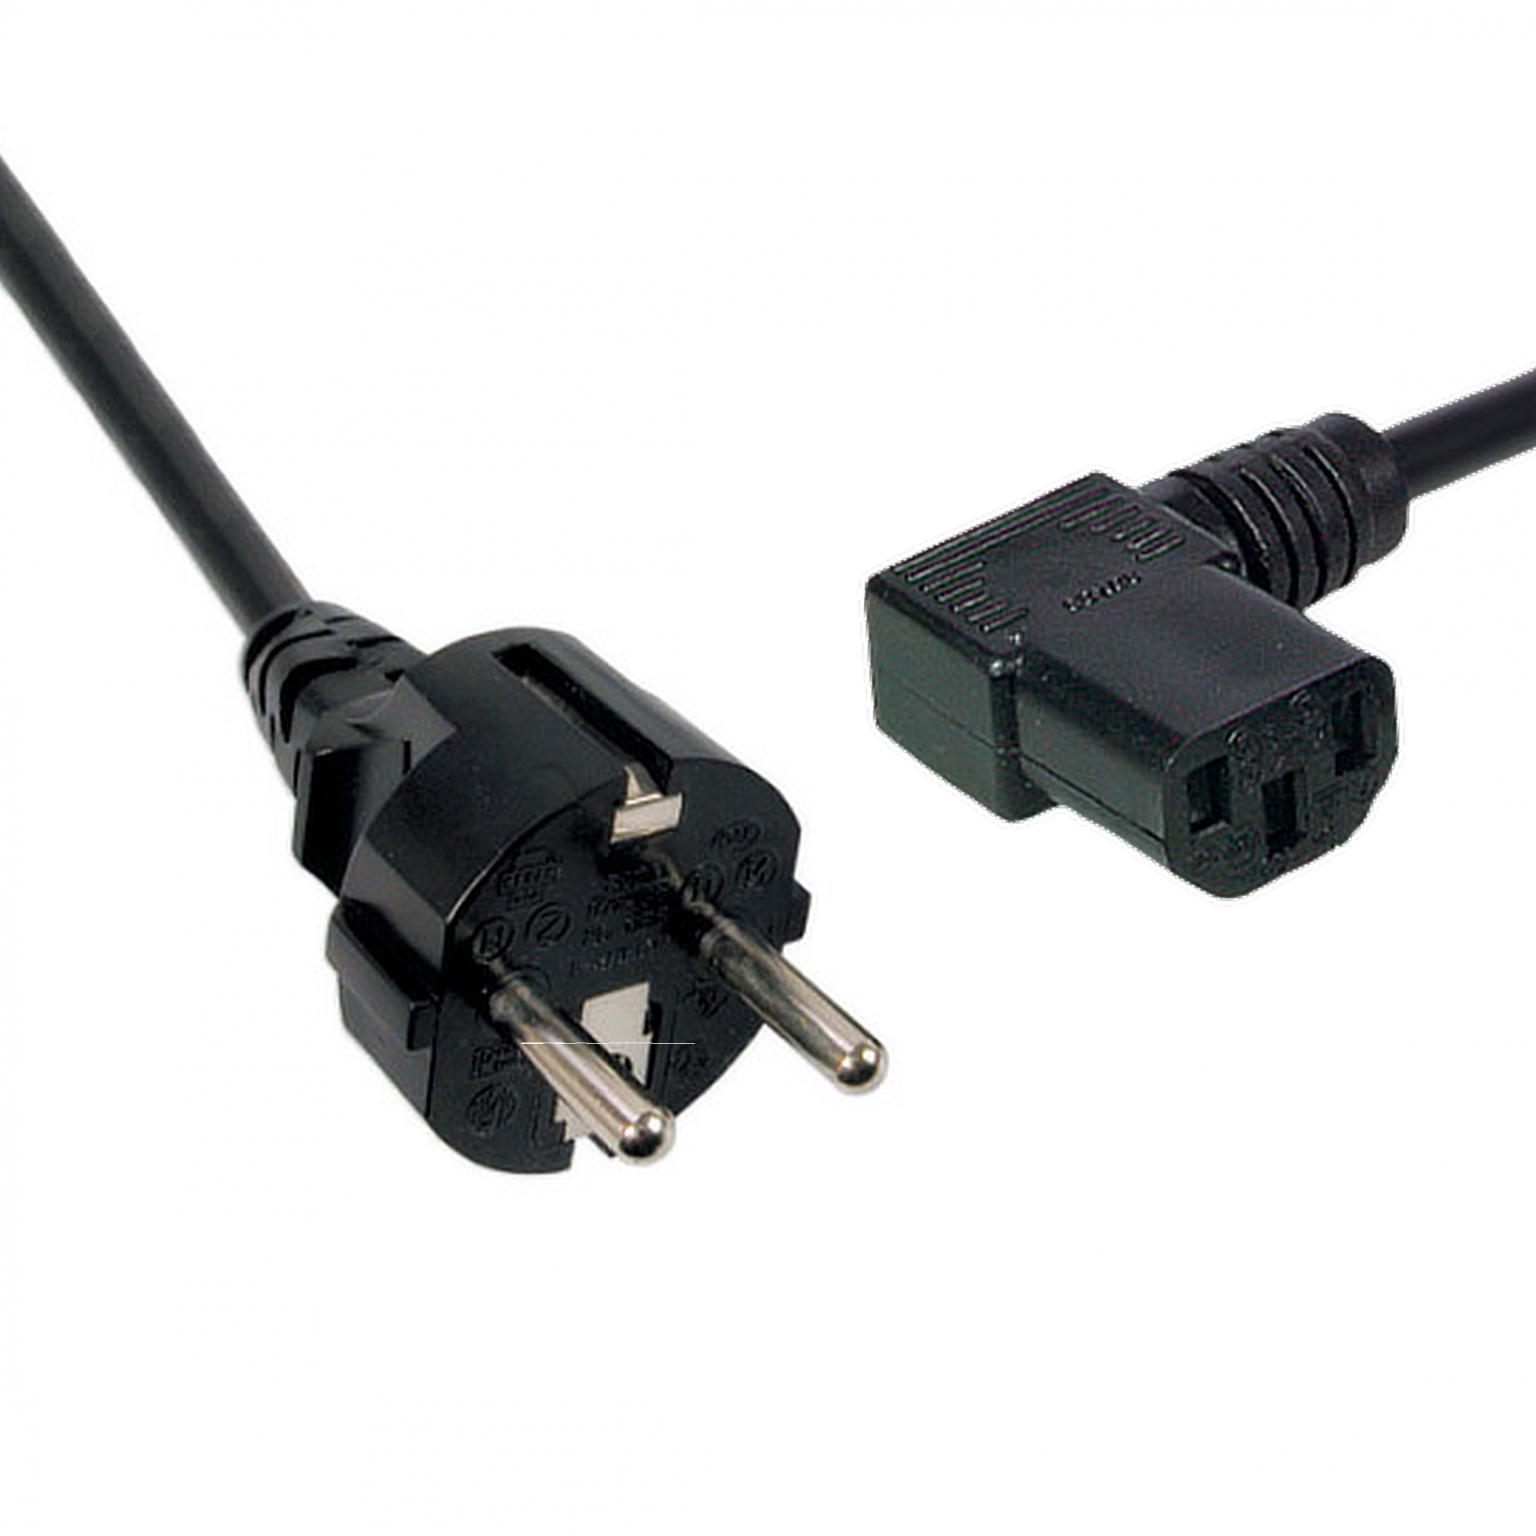 Power Cable 180ø-C13 90ø, blac k, 2 m, 3 x 0.75 mmý - Techtube Pro